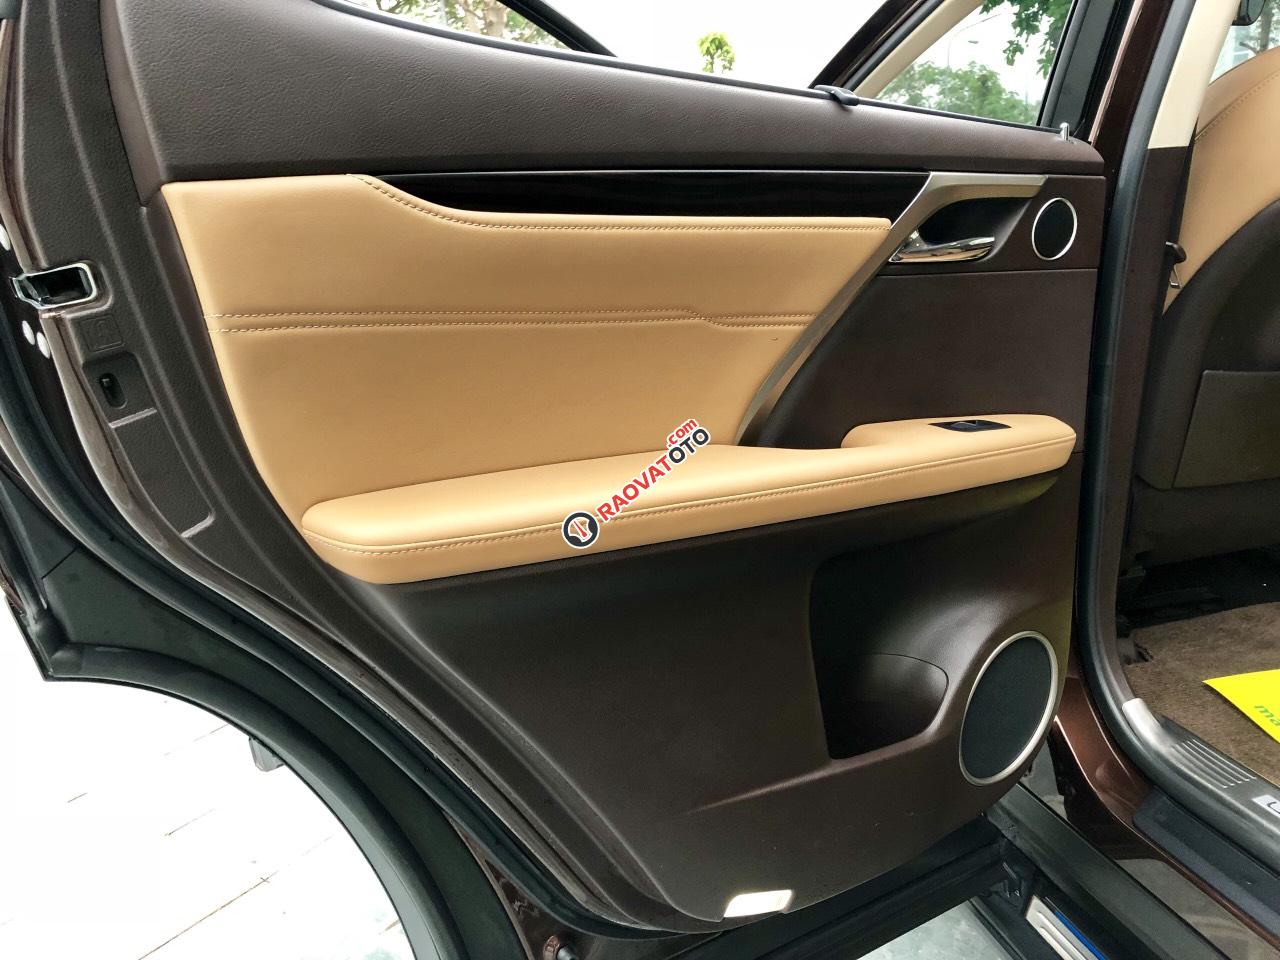 Bán Lexus RX 350 đời 2017 Hà Nội, màu nâu, xe lướt chất -4